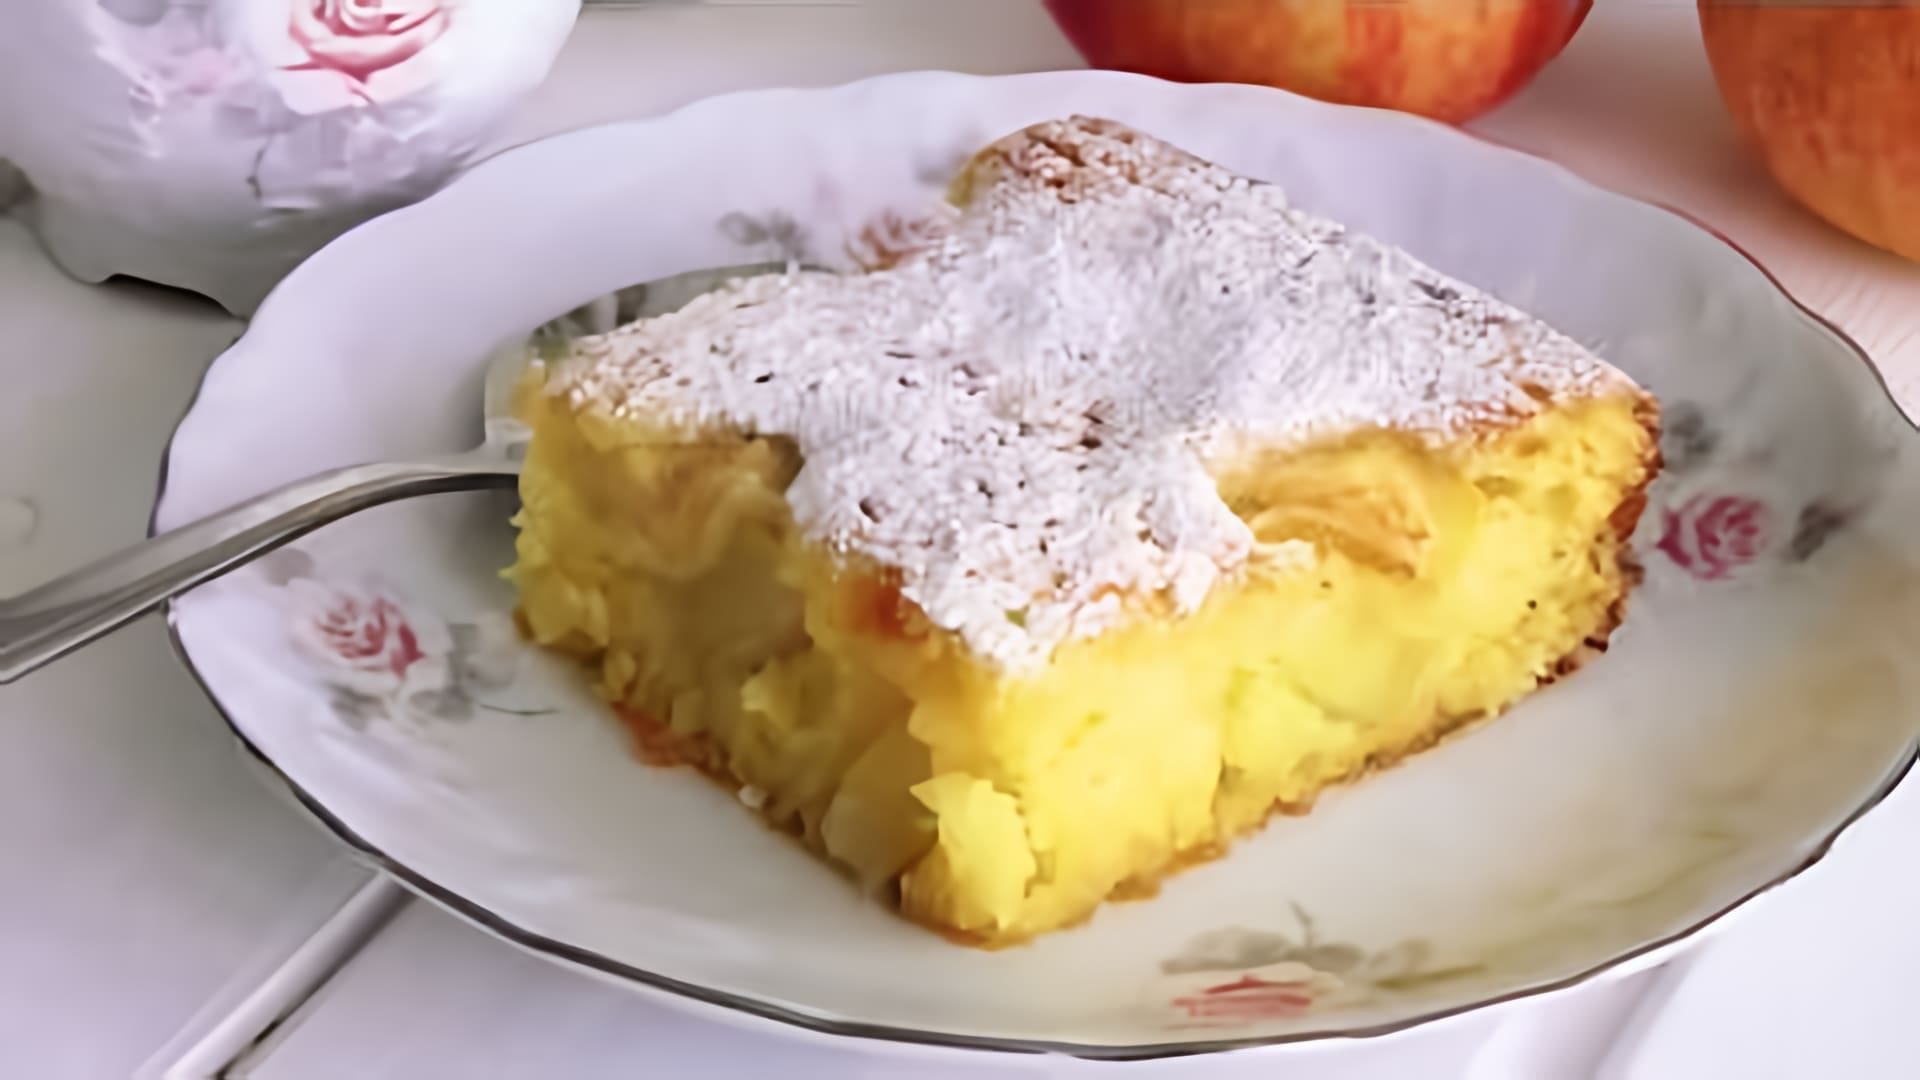 В этом видео демонстрируется рецепт приготовления кукурузного манника с яблоками